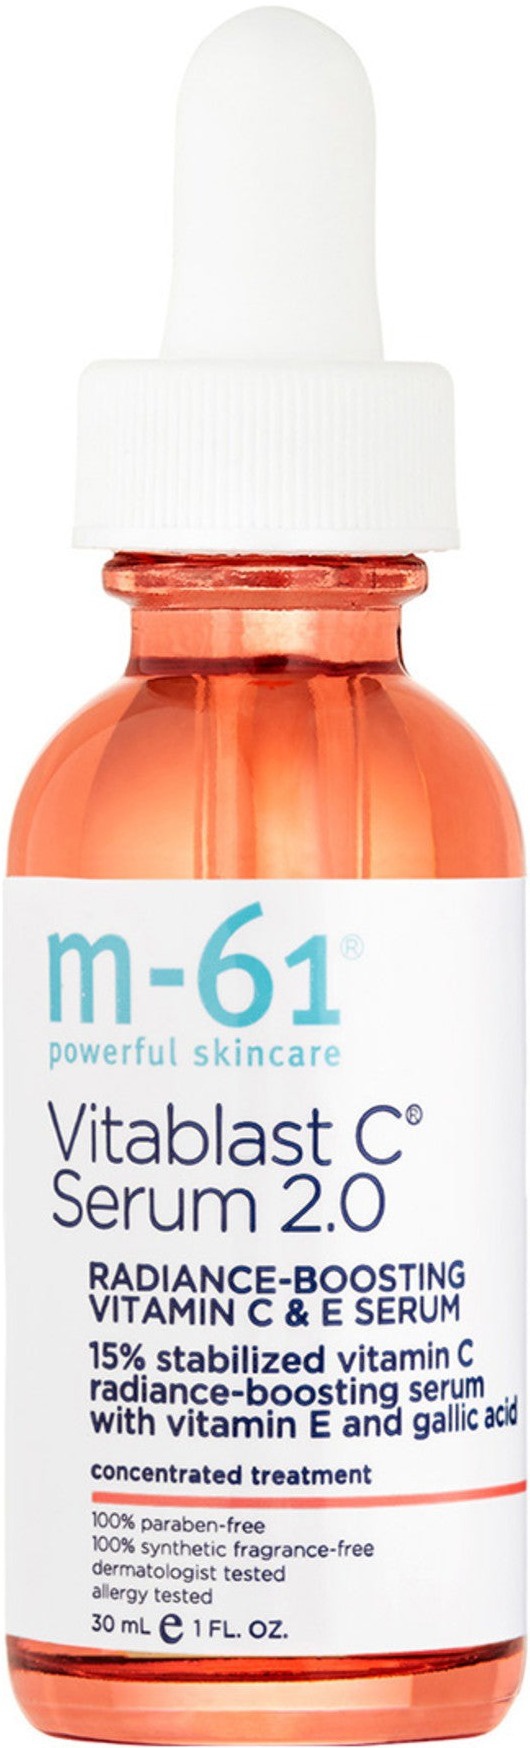 M-61 Vitablast C Serum 2.0